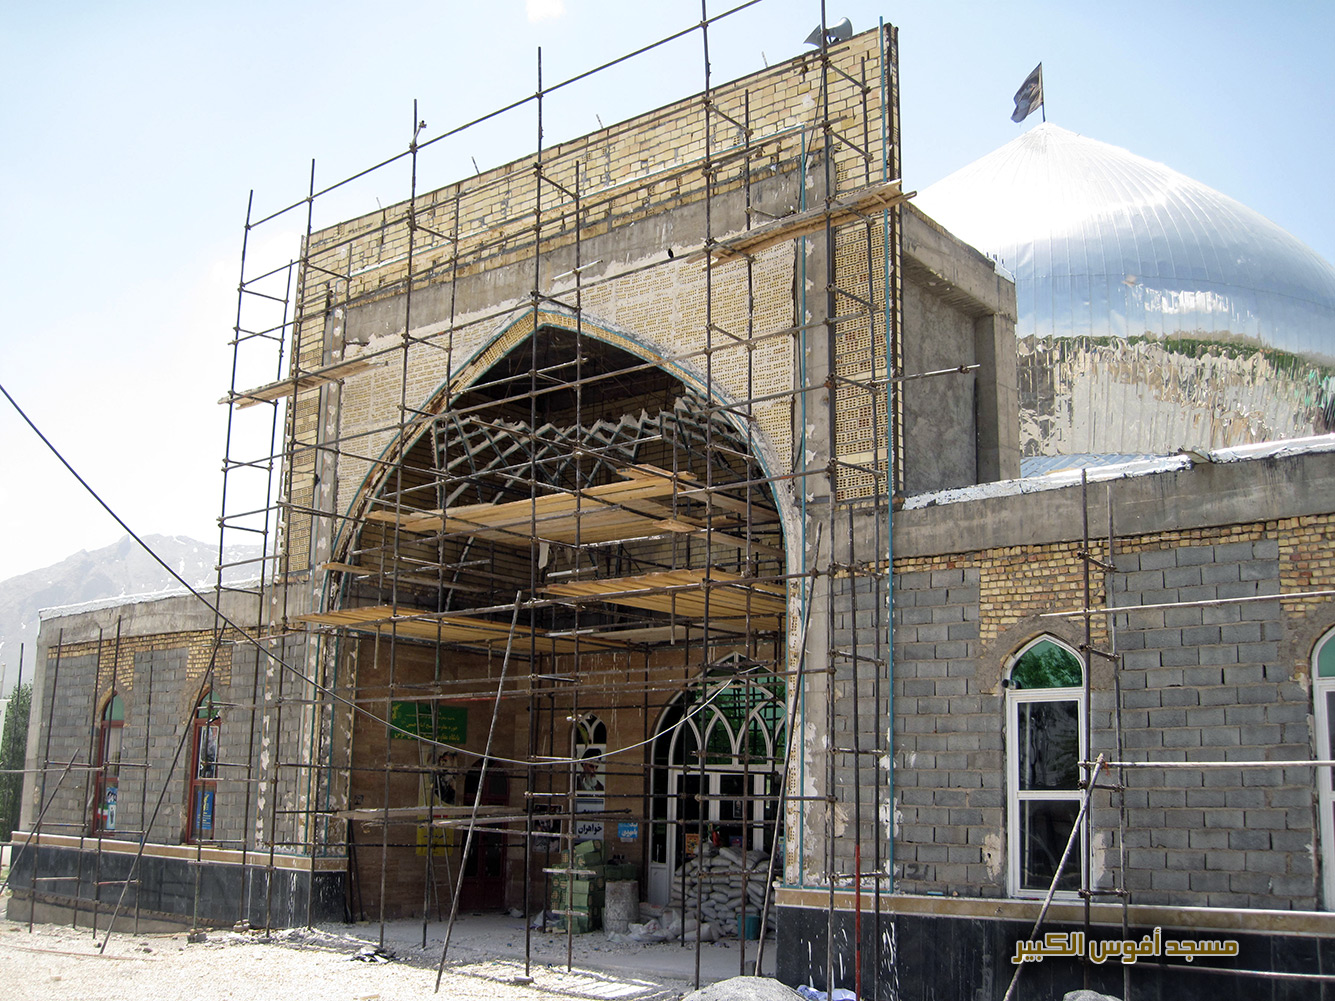 مسجد أفوس الكبير، www.eitile-co.com